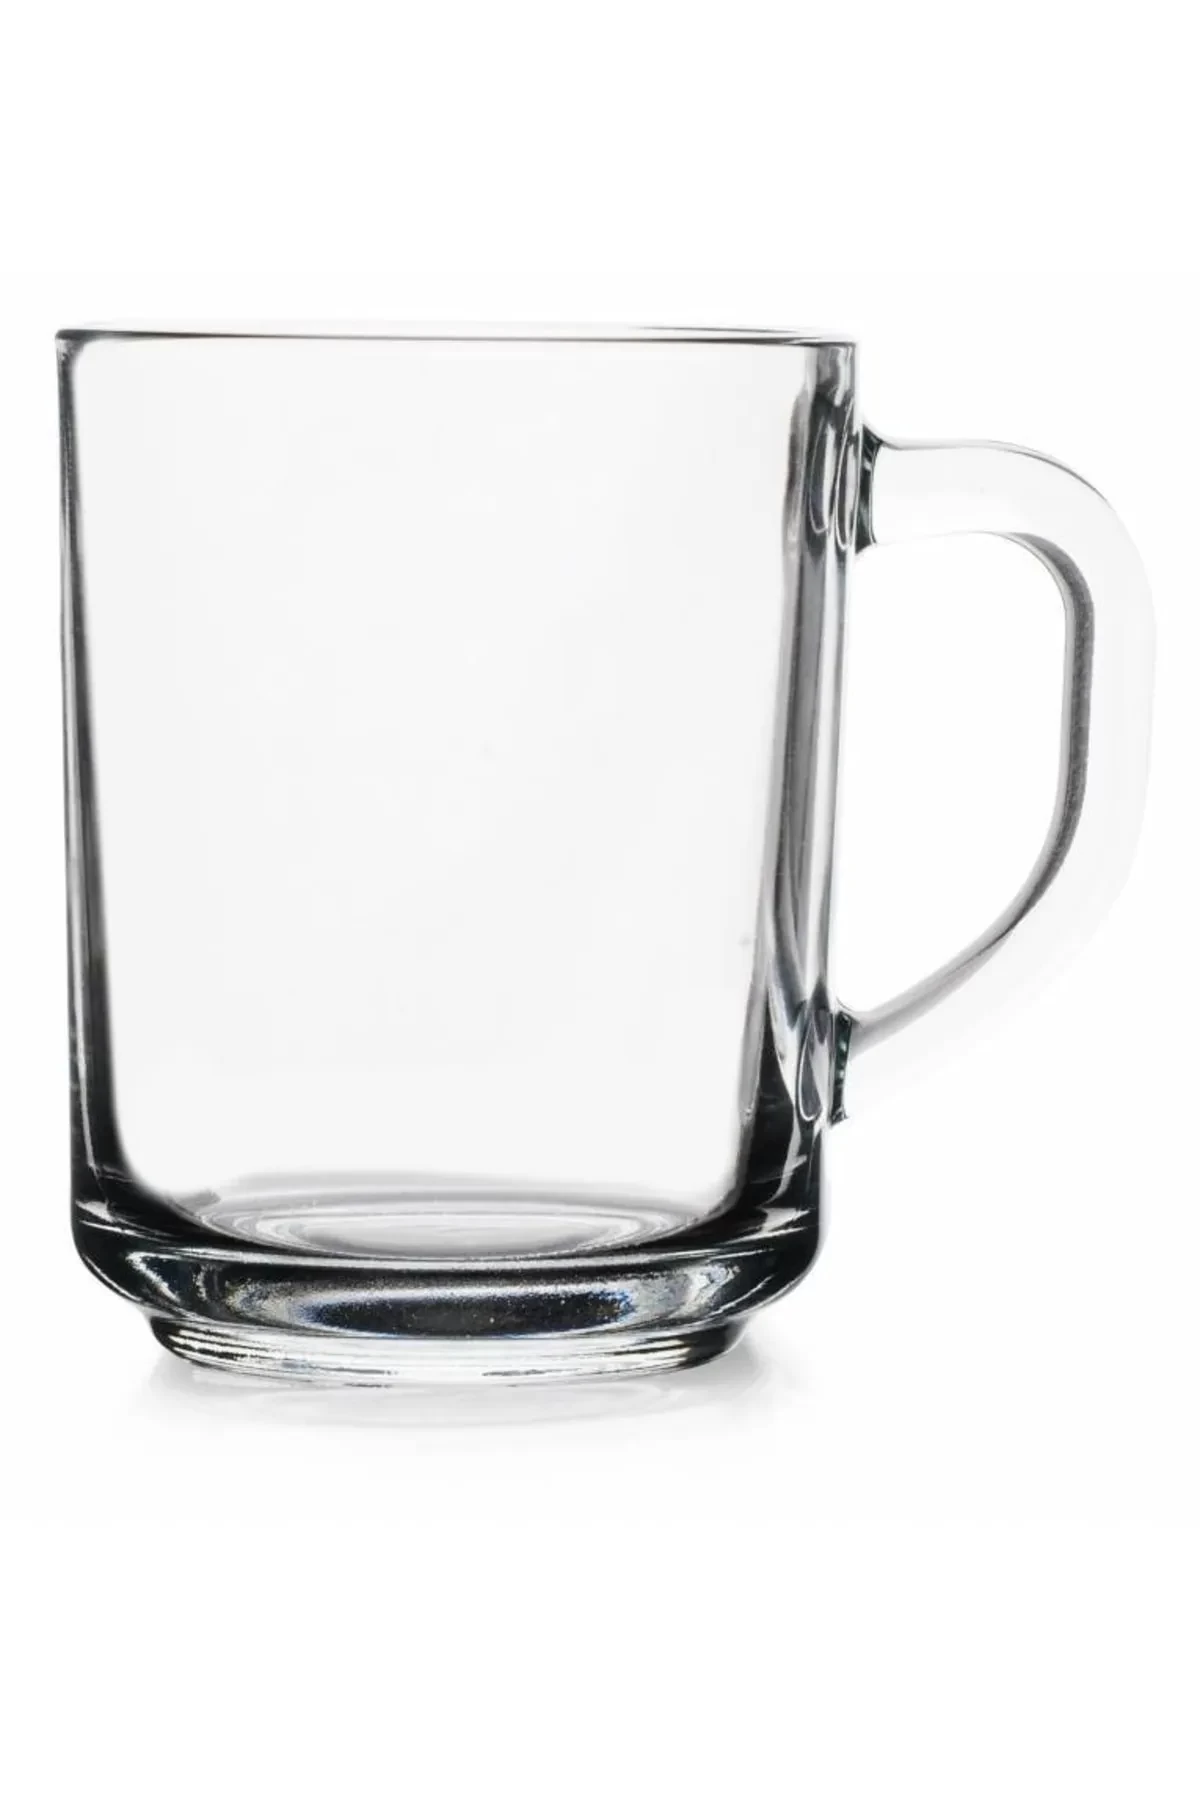 PAŞABAHÇE GLASS CUP